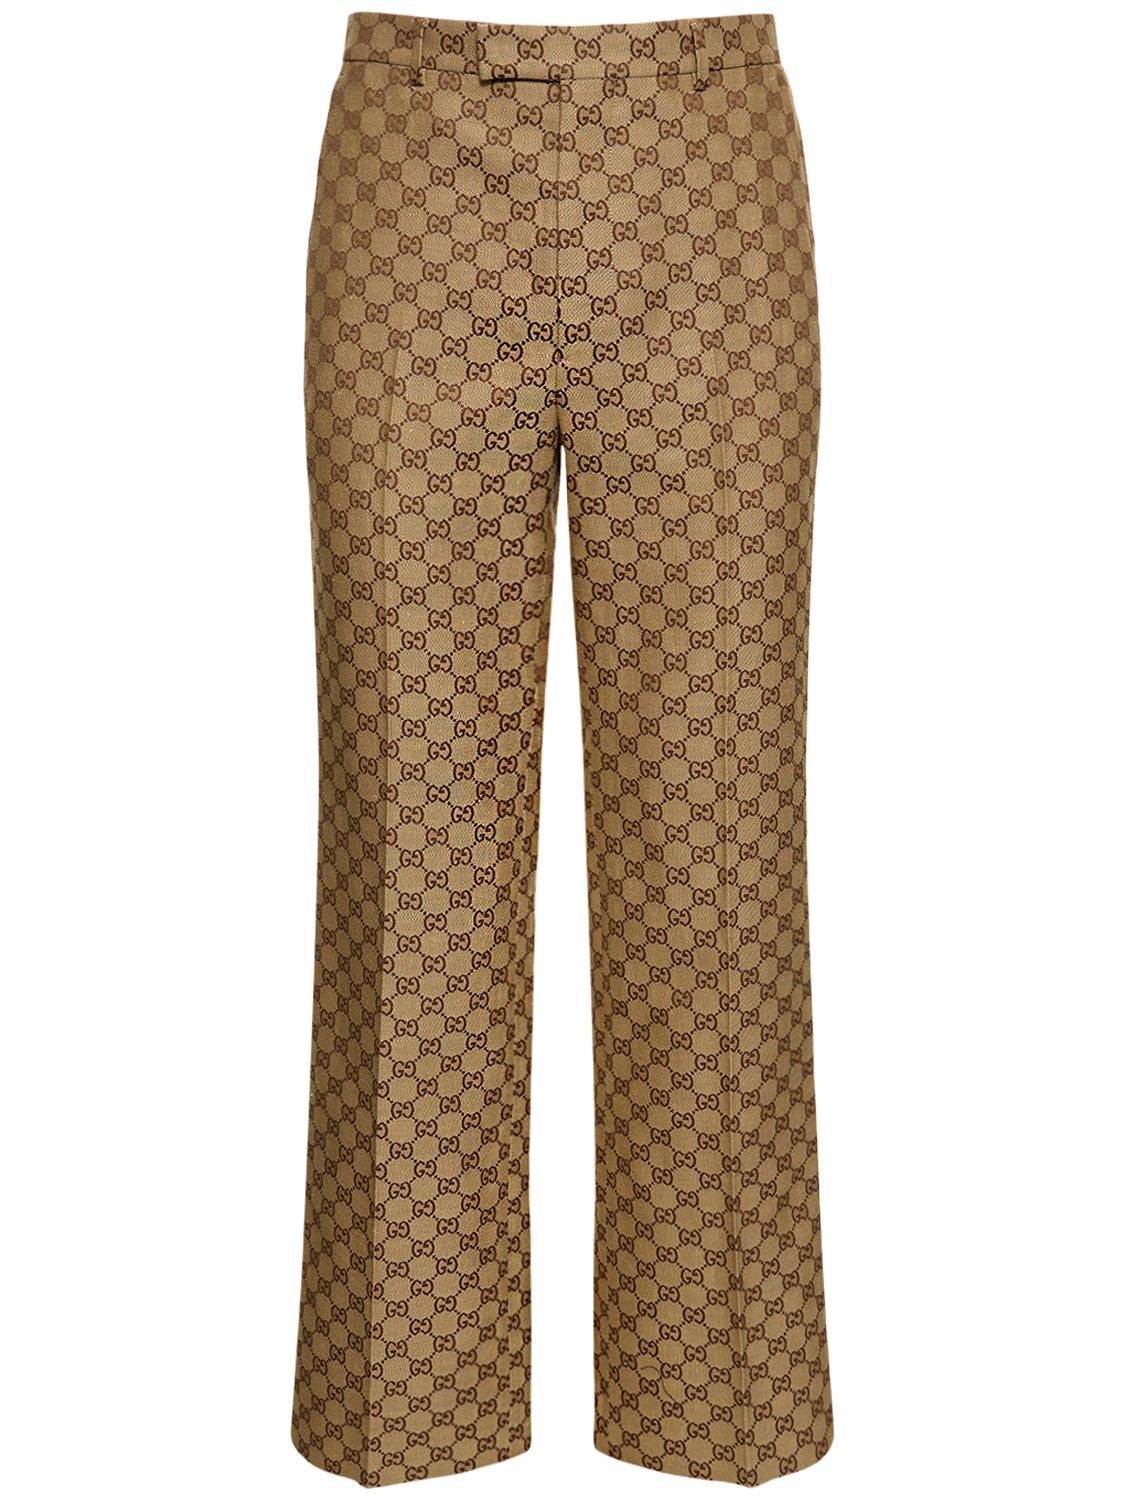 Gucci Men's Wide-Leg Monogrammed Linen-Blend Shorts